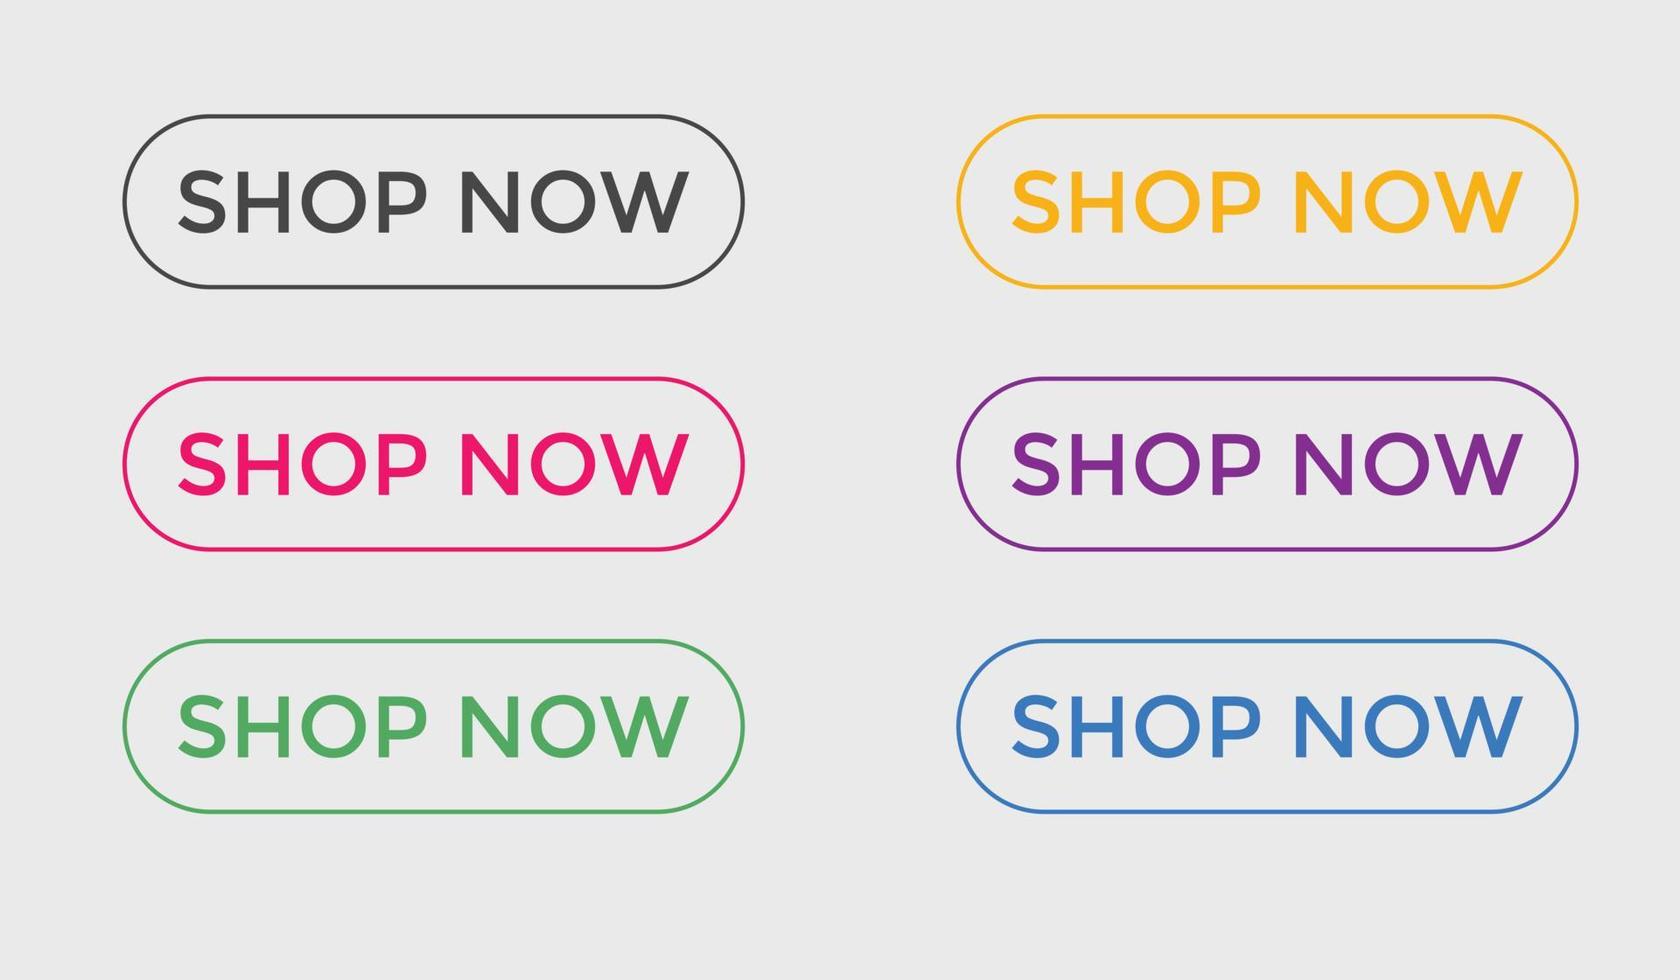 acheter maintenant texte boutons web icône étiquette bouton web de commerce électronique acheter ou acheter vecteur